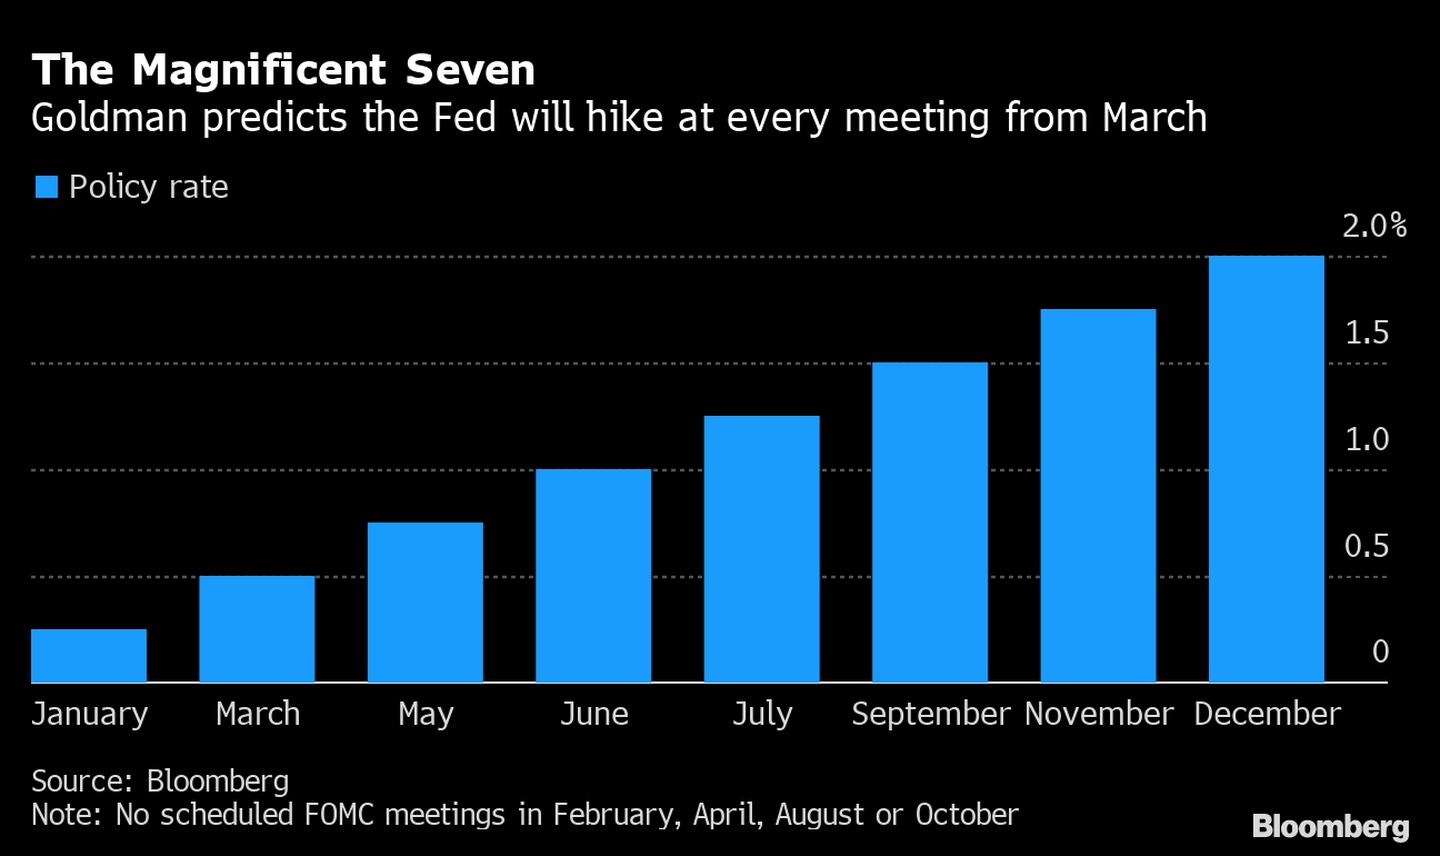 Goldman prevê que o Fed vai subir as taxas de juros em toda reunião a partir de marçodfd